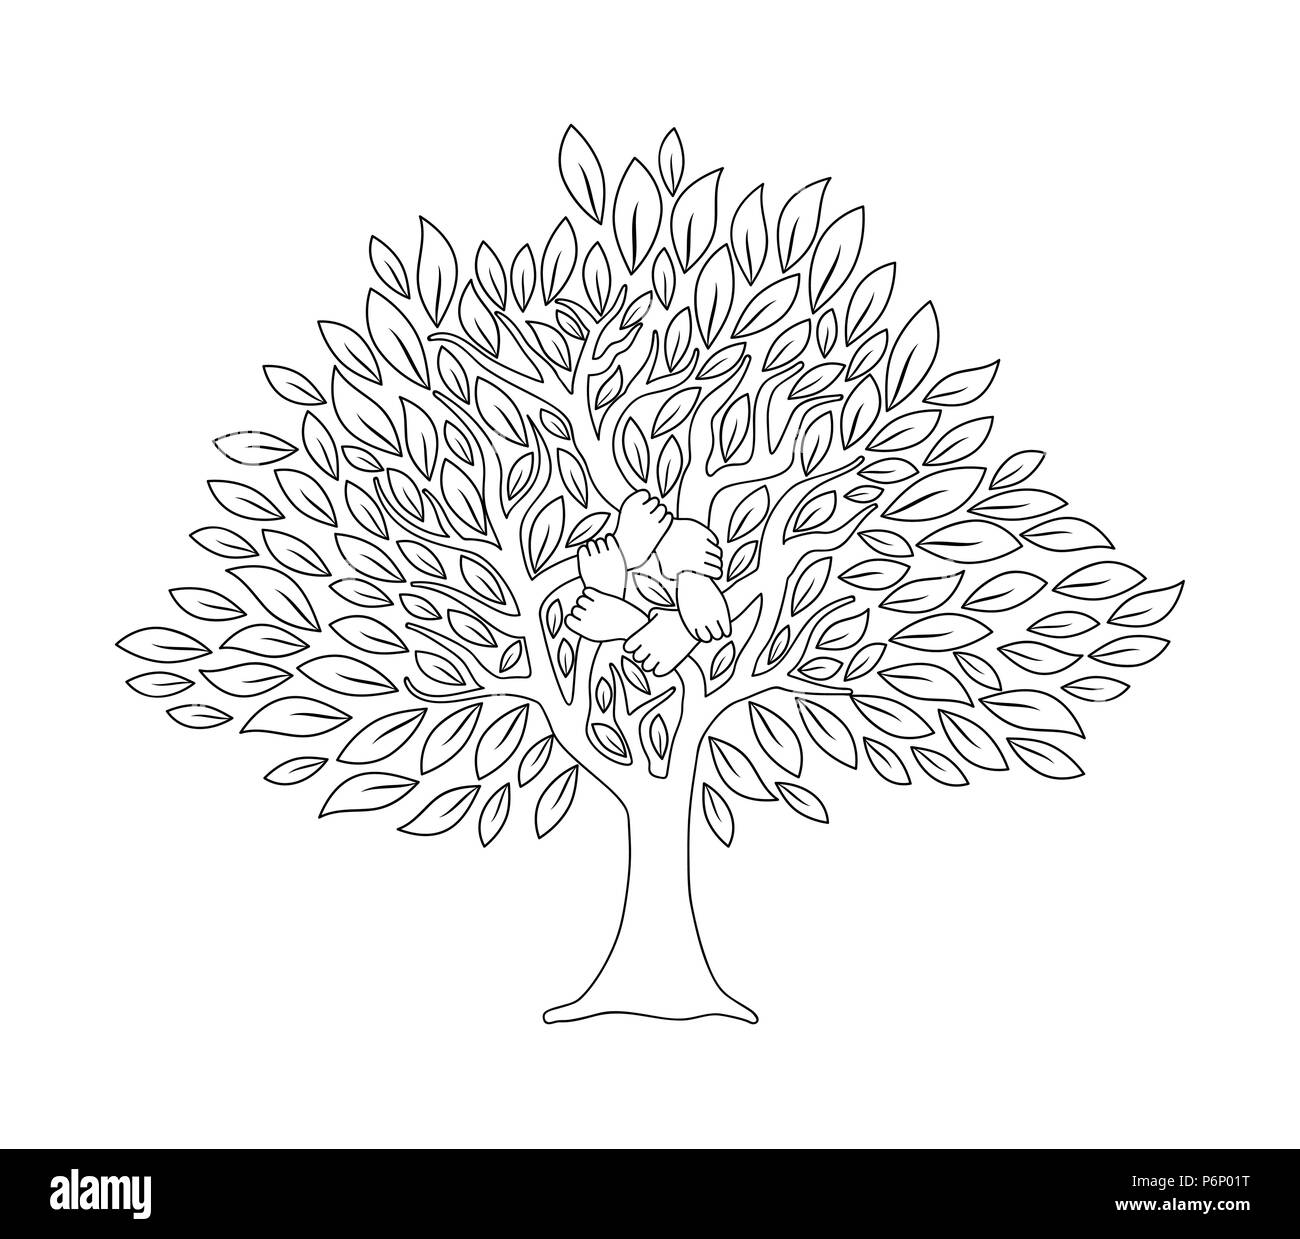 Baum mit menschlichen Händen zusammen im Umriss Stil. Community Team Konzeption Illustration für die Kultur der Vielfalt, Natur- oder Teamarbeit Projekt. EPS 10 vec Stock Vektor